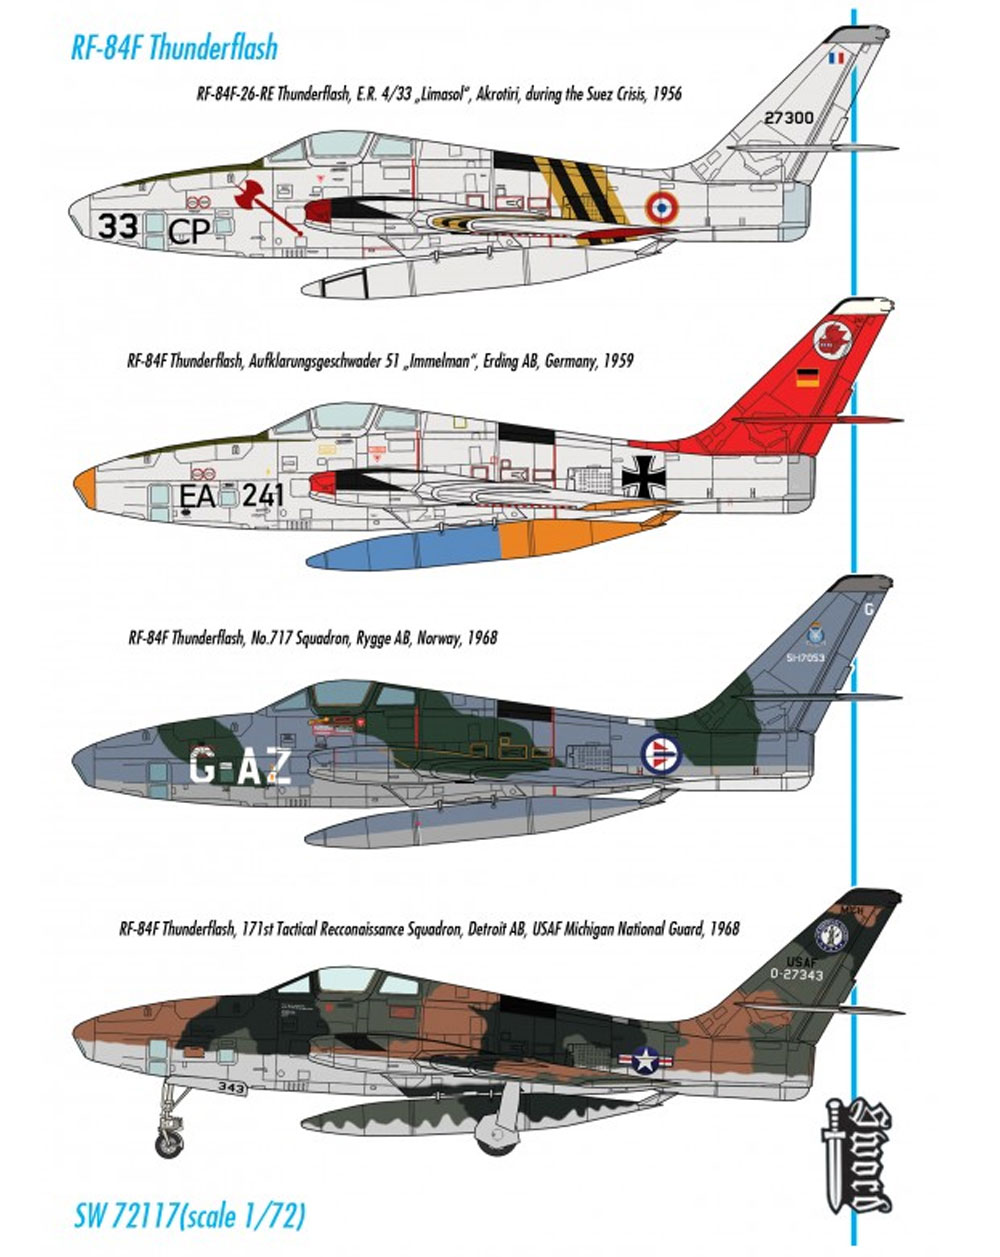 RF-84F サンダーフラッシュ パート2 プラモデル (ソード 1/72 エアクラフト プラモデル No.72117) 商品画像_2